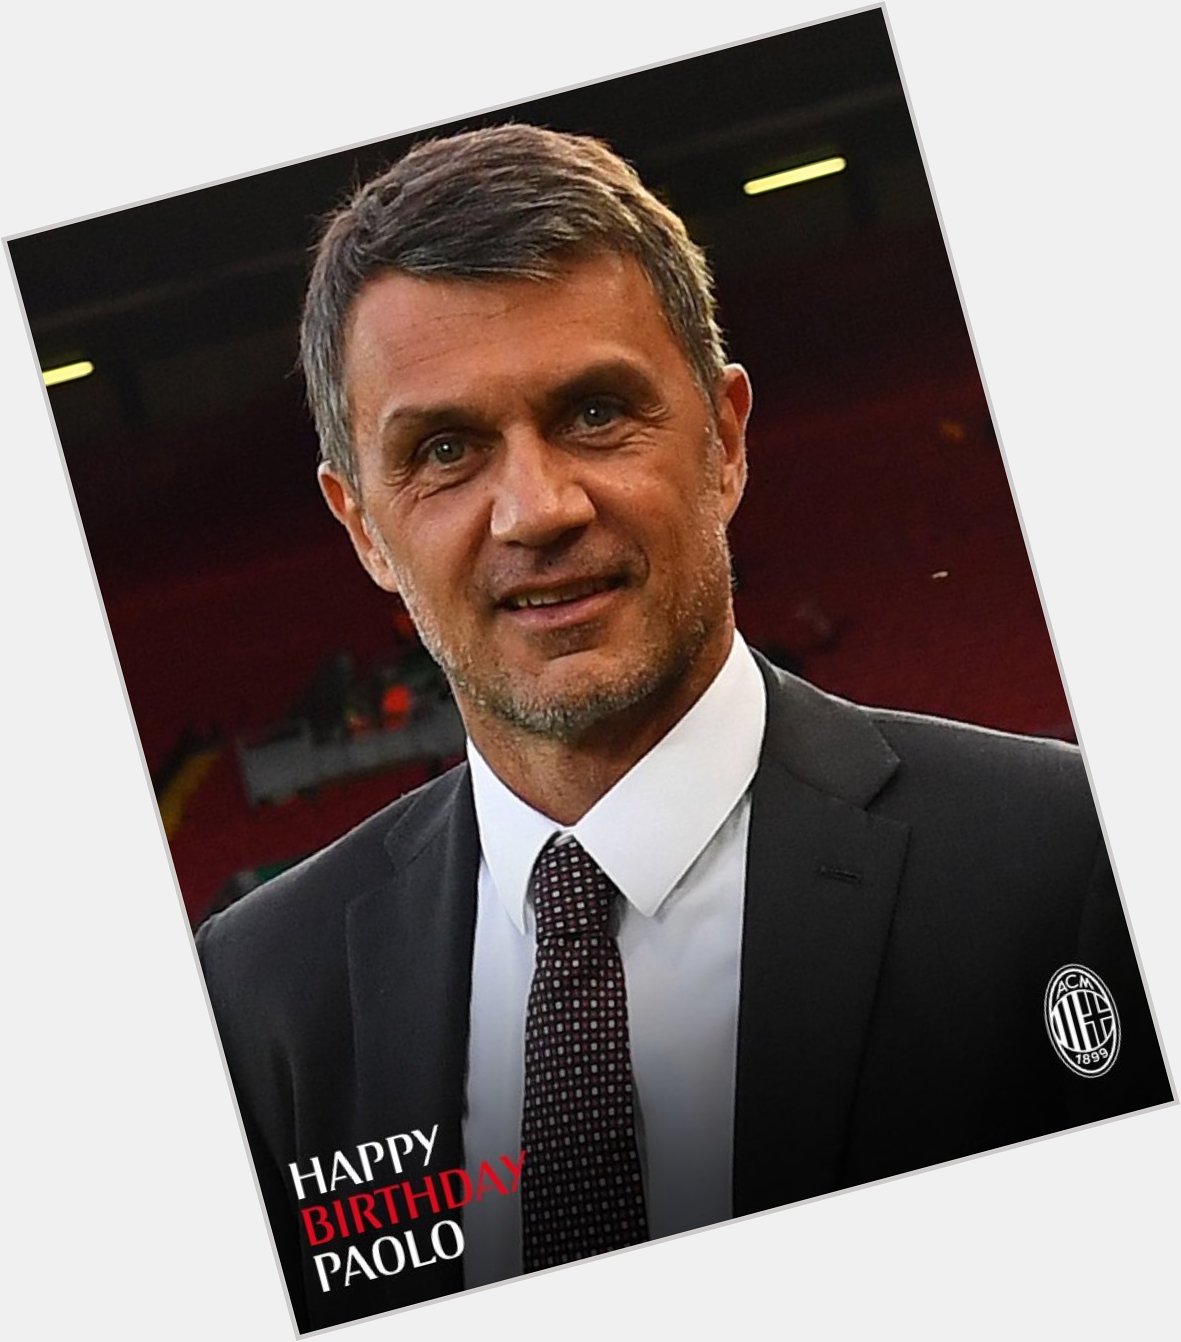 Happy birthday to the one true GOAT defender 

Grazie Paolo Maldini 